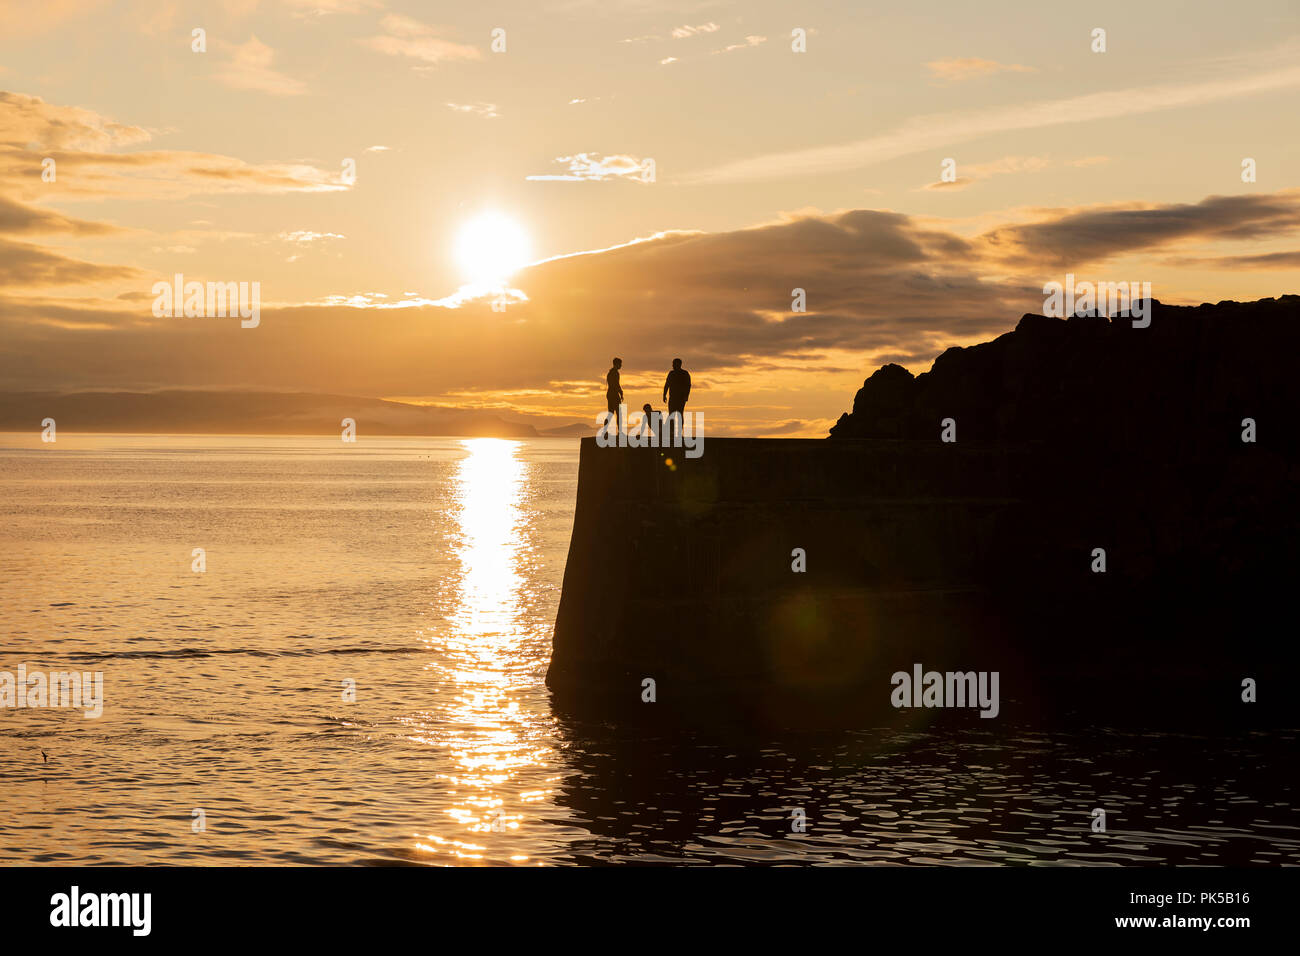 Silueta de personas saltando desde el muro del puerto al atardecer en la luz del sol reflejada en el mar, Portstewart, Co. de Derry, Irlanda del Norte Foto de stock